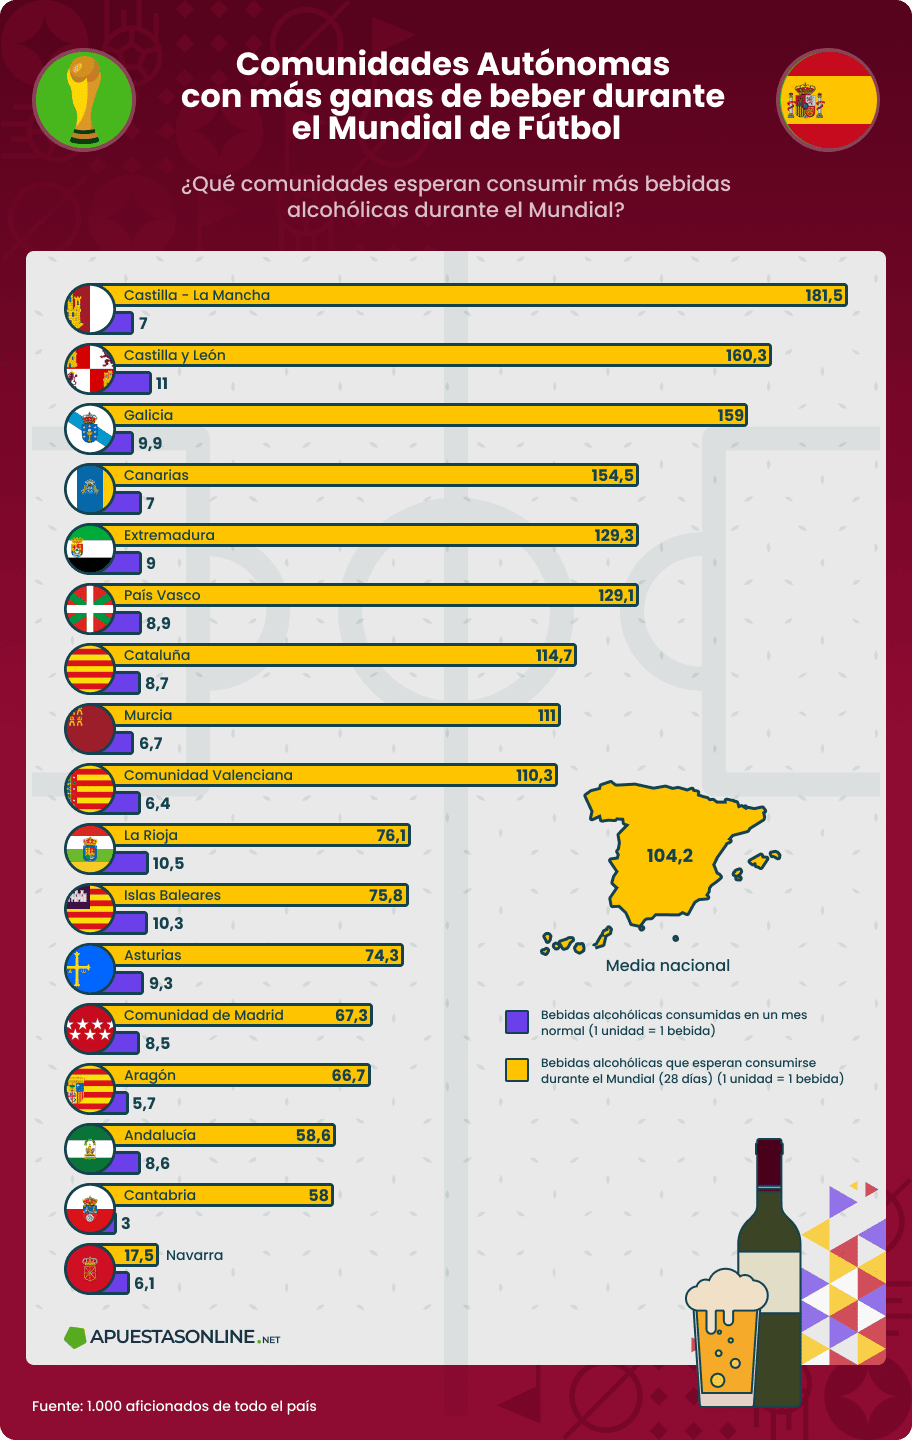 Infografía de las comunidades autónomas de España con más ganas de beber en el Mundial